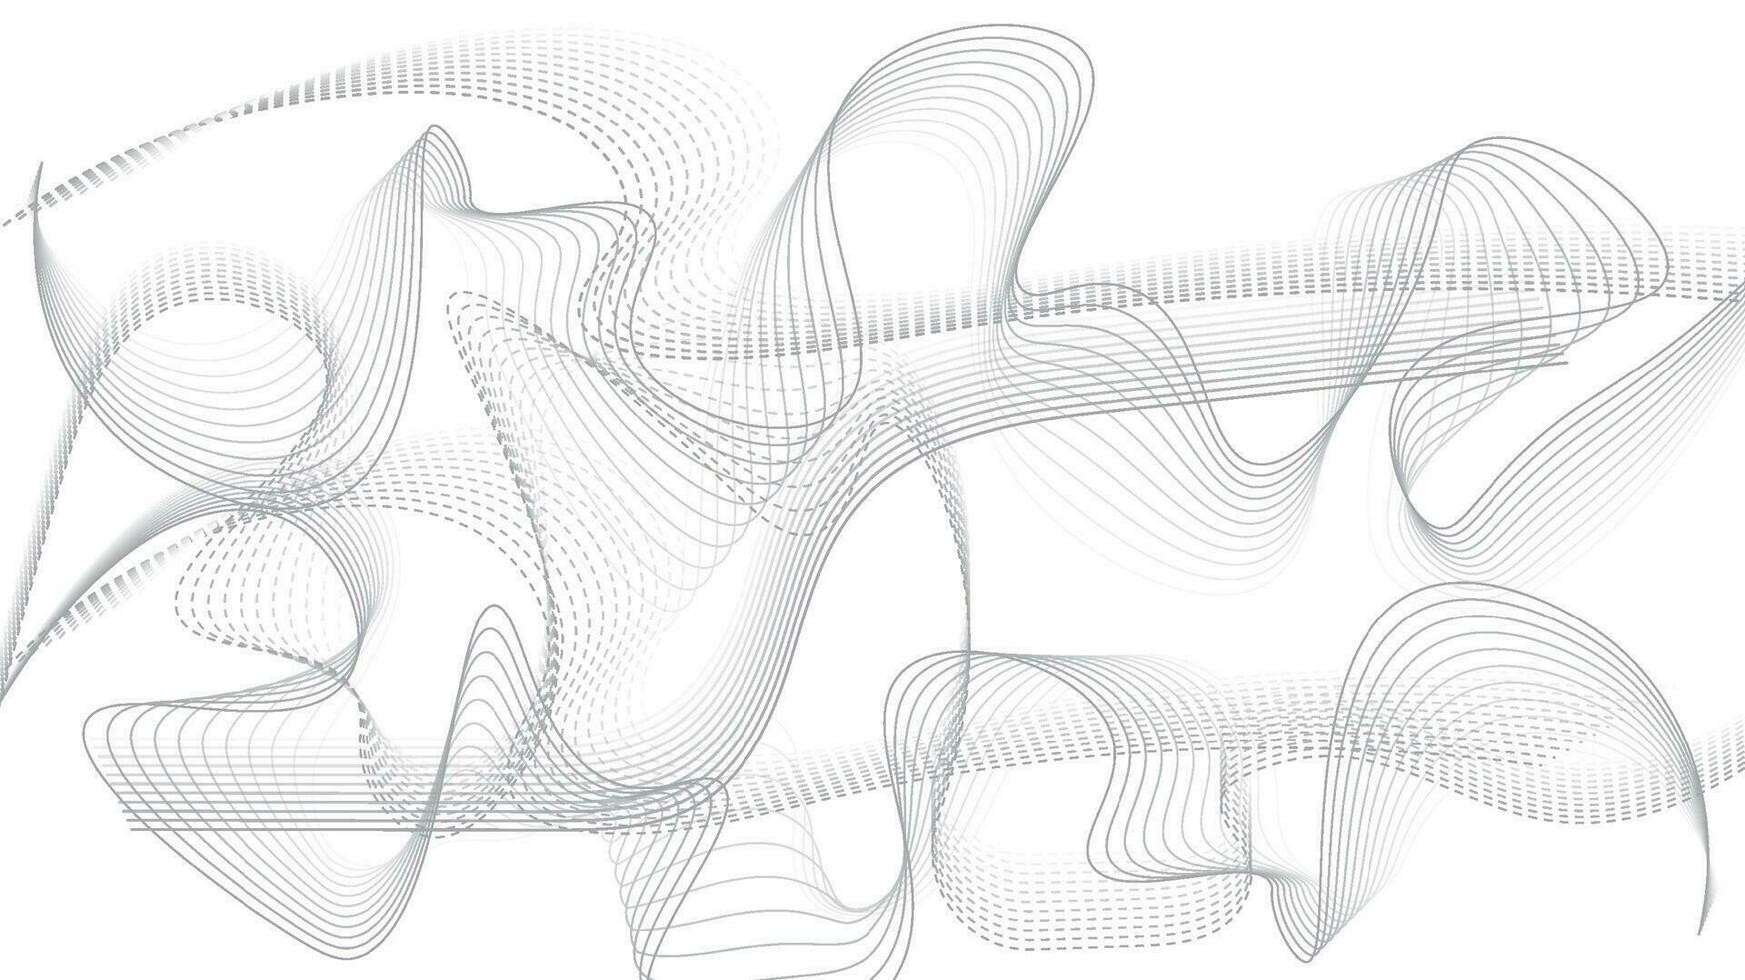 Linie von Vektor abstrakt Grafik Welle Muster. Digital Frequenz gebogen wellig Linie, glatt Streifen. Hintergrund und modern Wellen Stil.